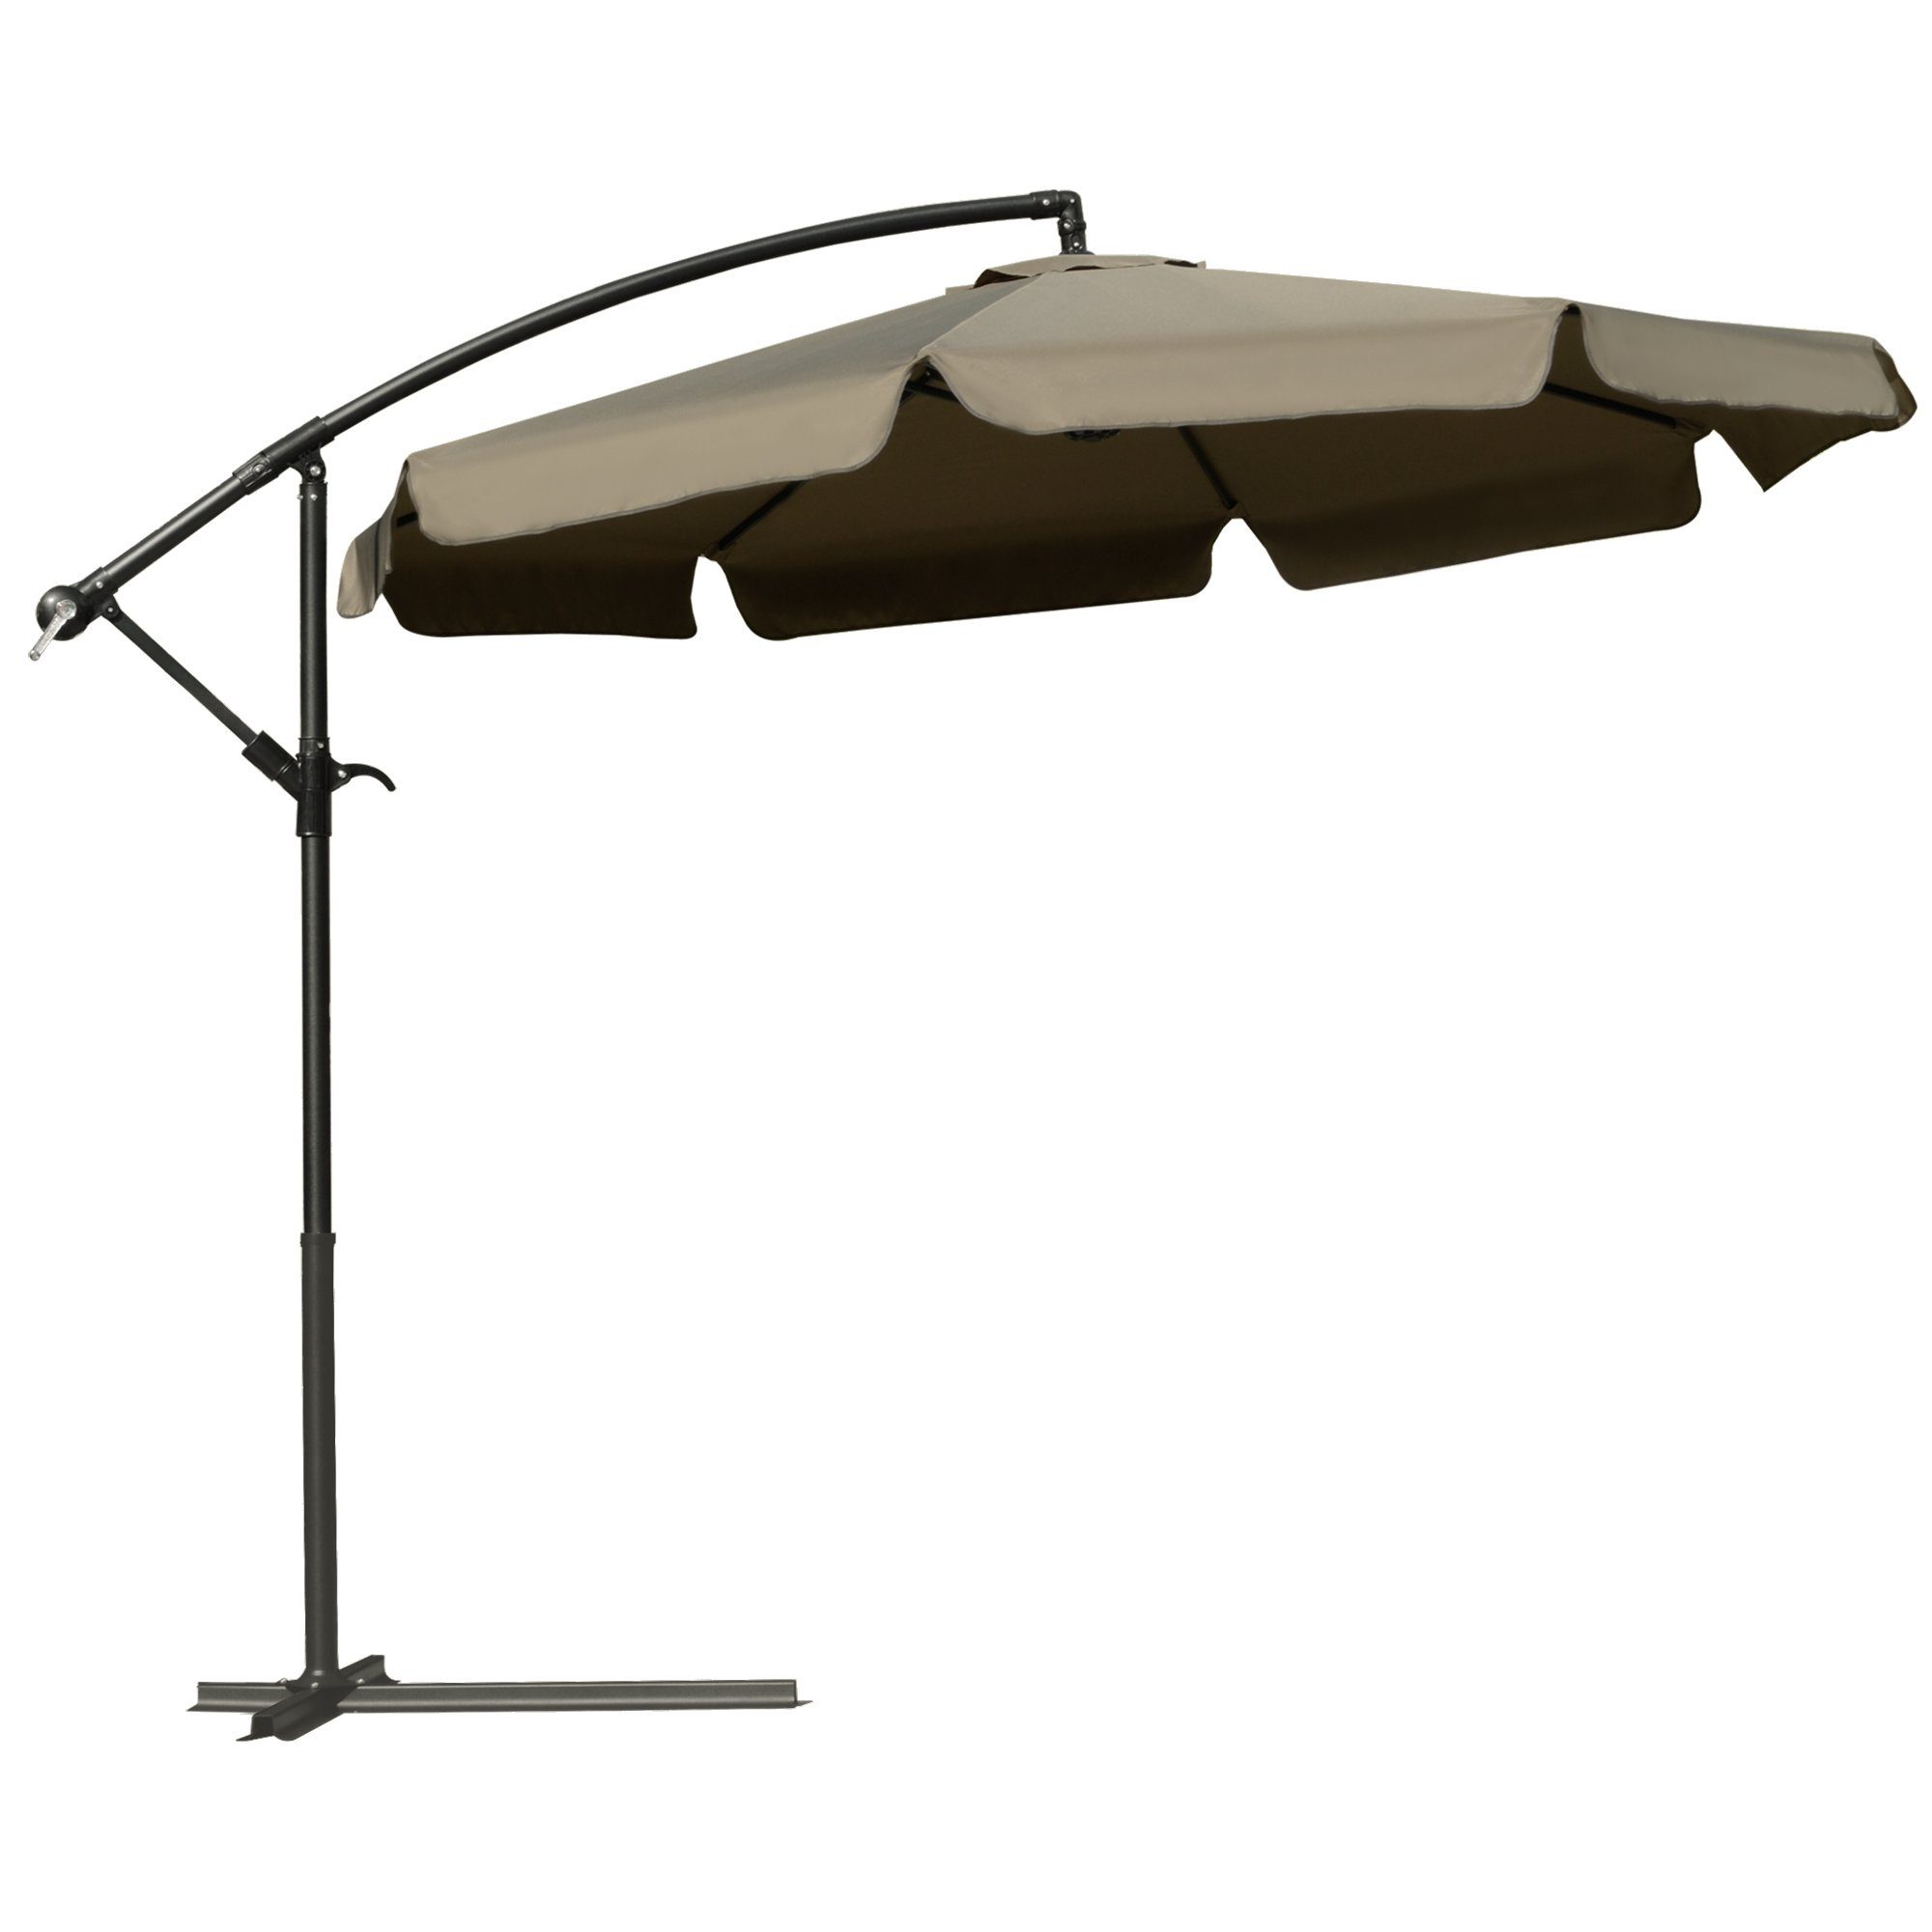 Outsunny Ampelschirm Mit Sonnenschutz mit Handkurbel Rüschen, LxB: 265x265 cm, Gartenschirm, Sonnenschirm, Polyester, Kaffee